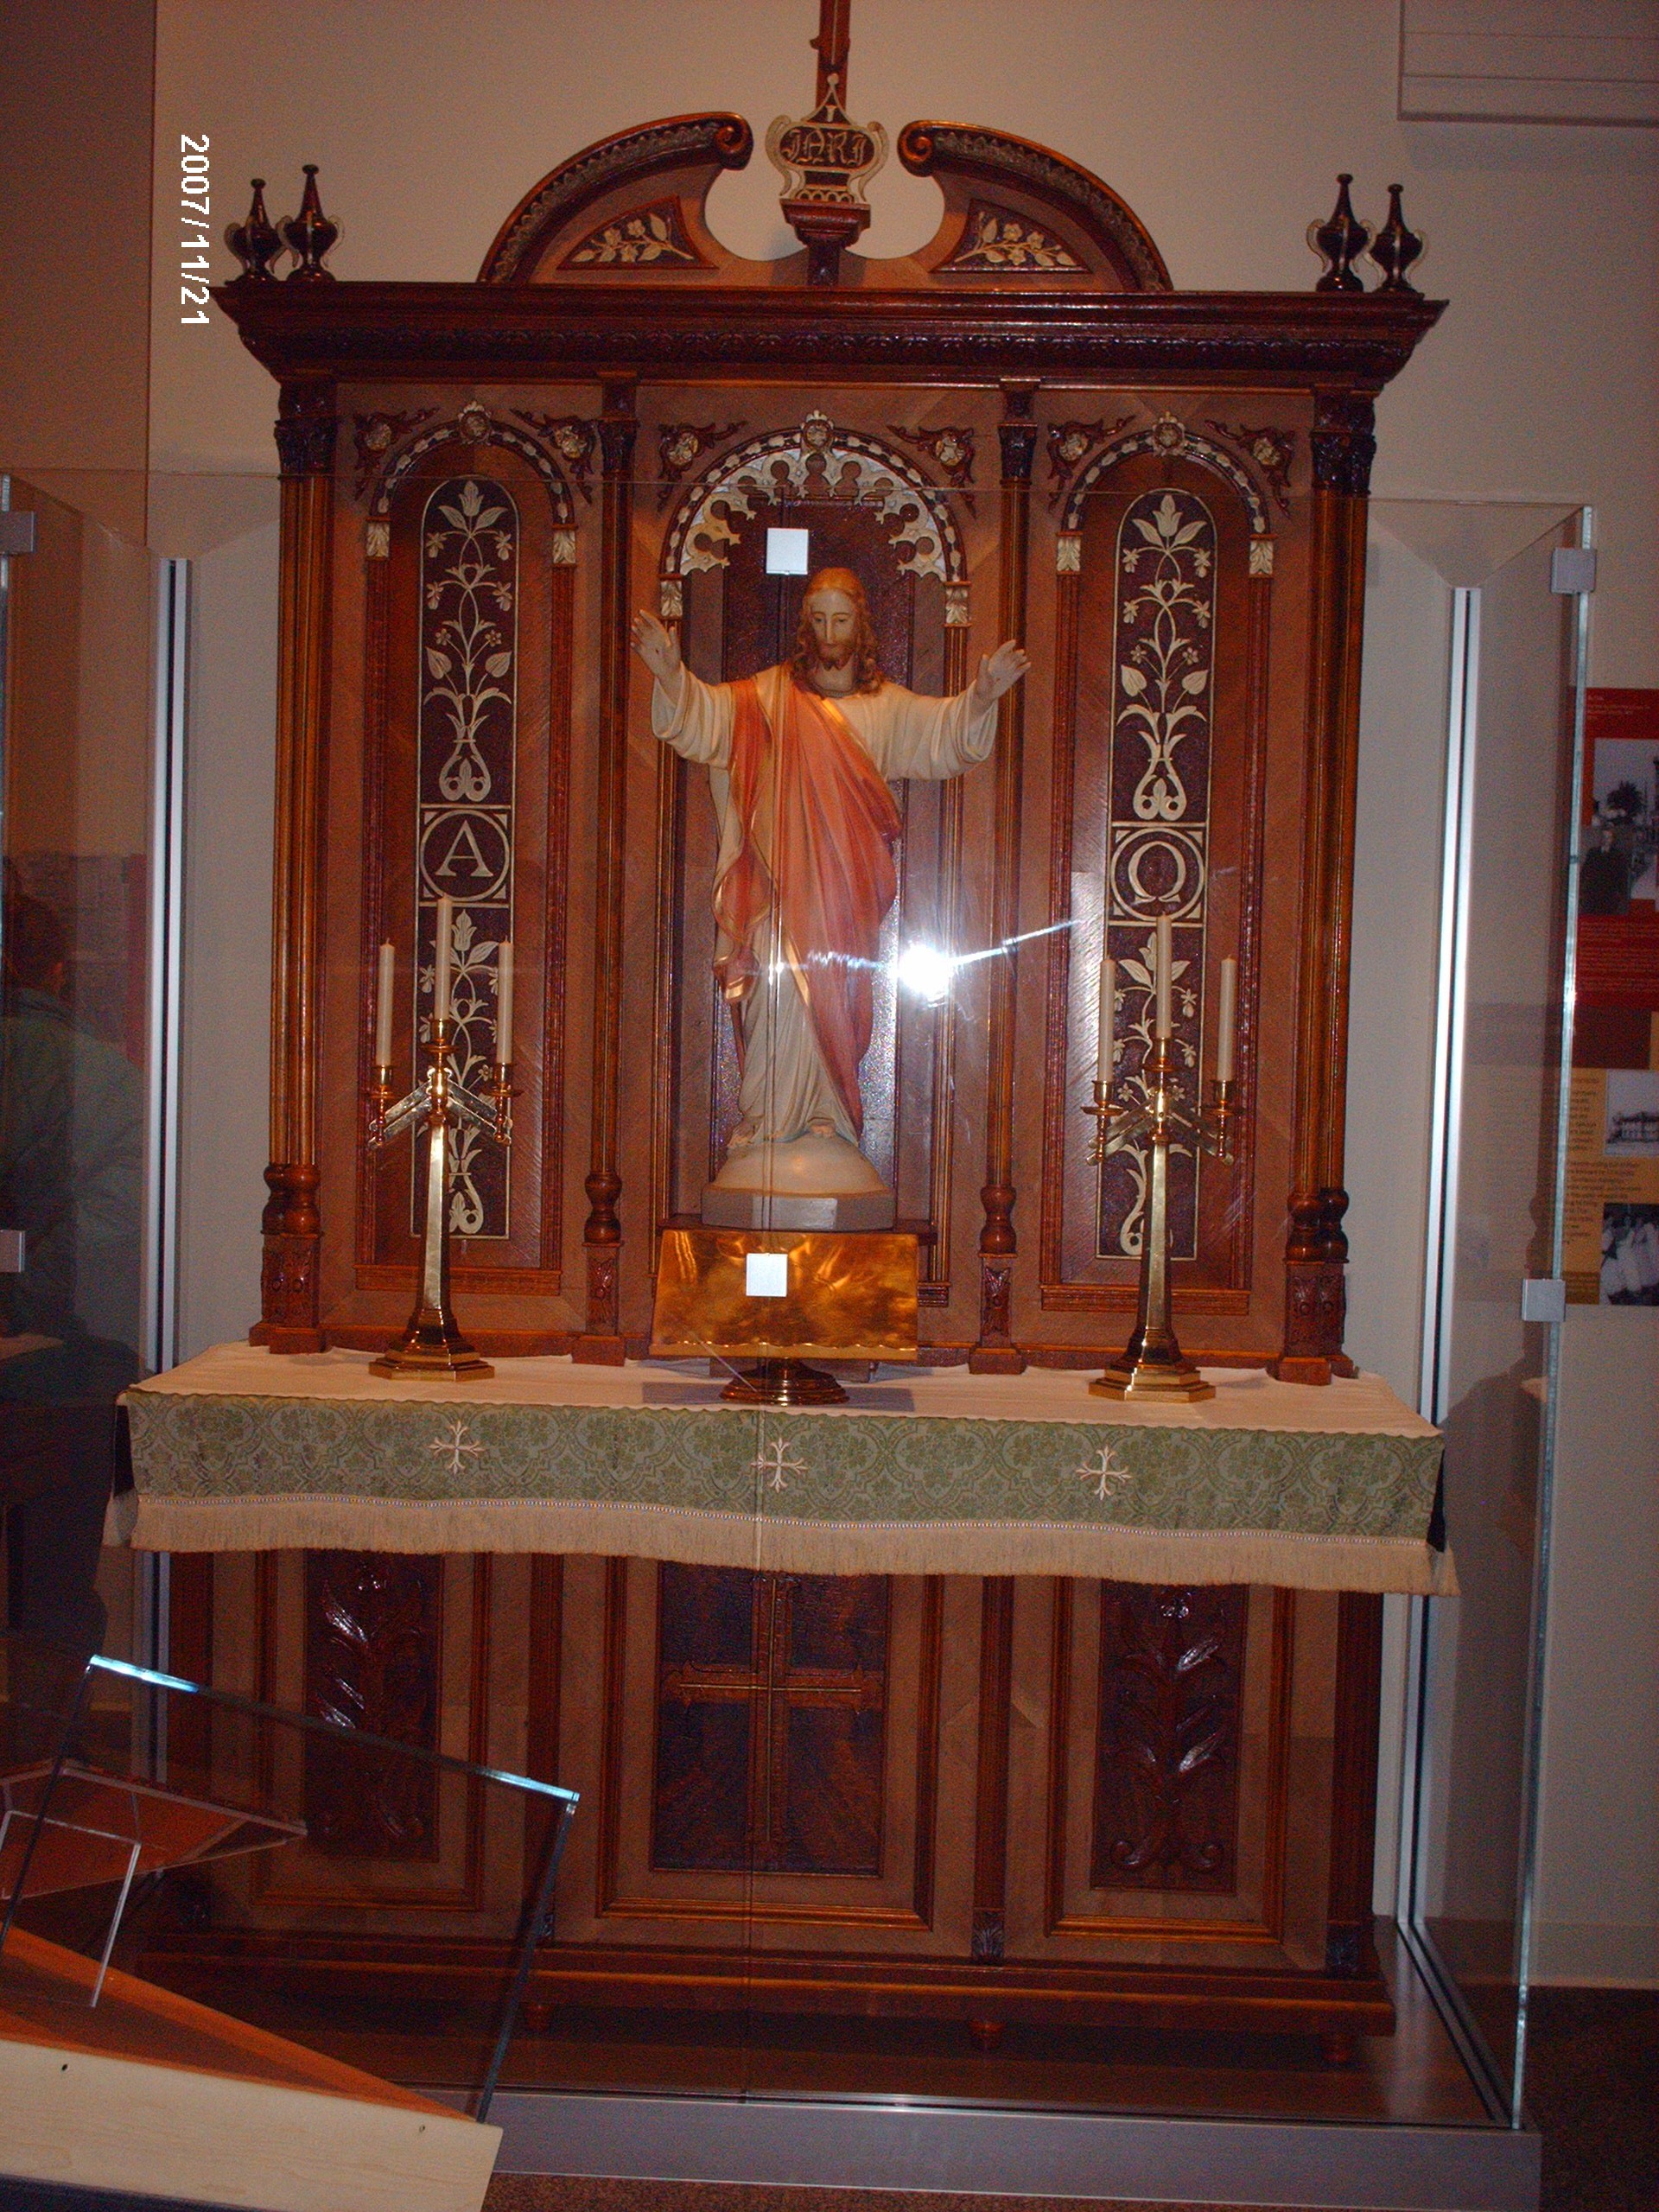 Johann Franzman's first altar